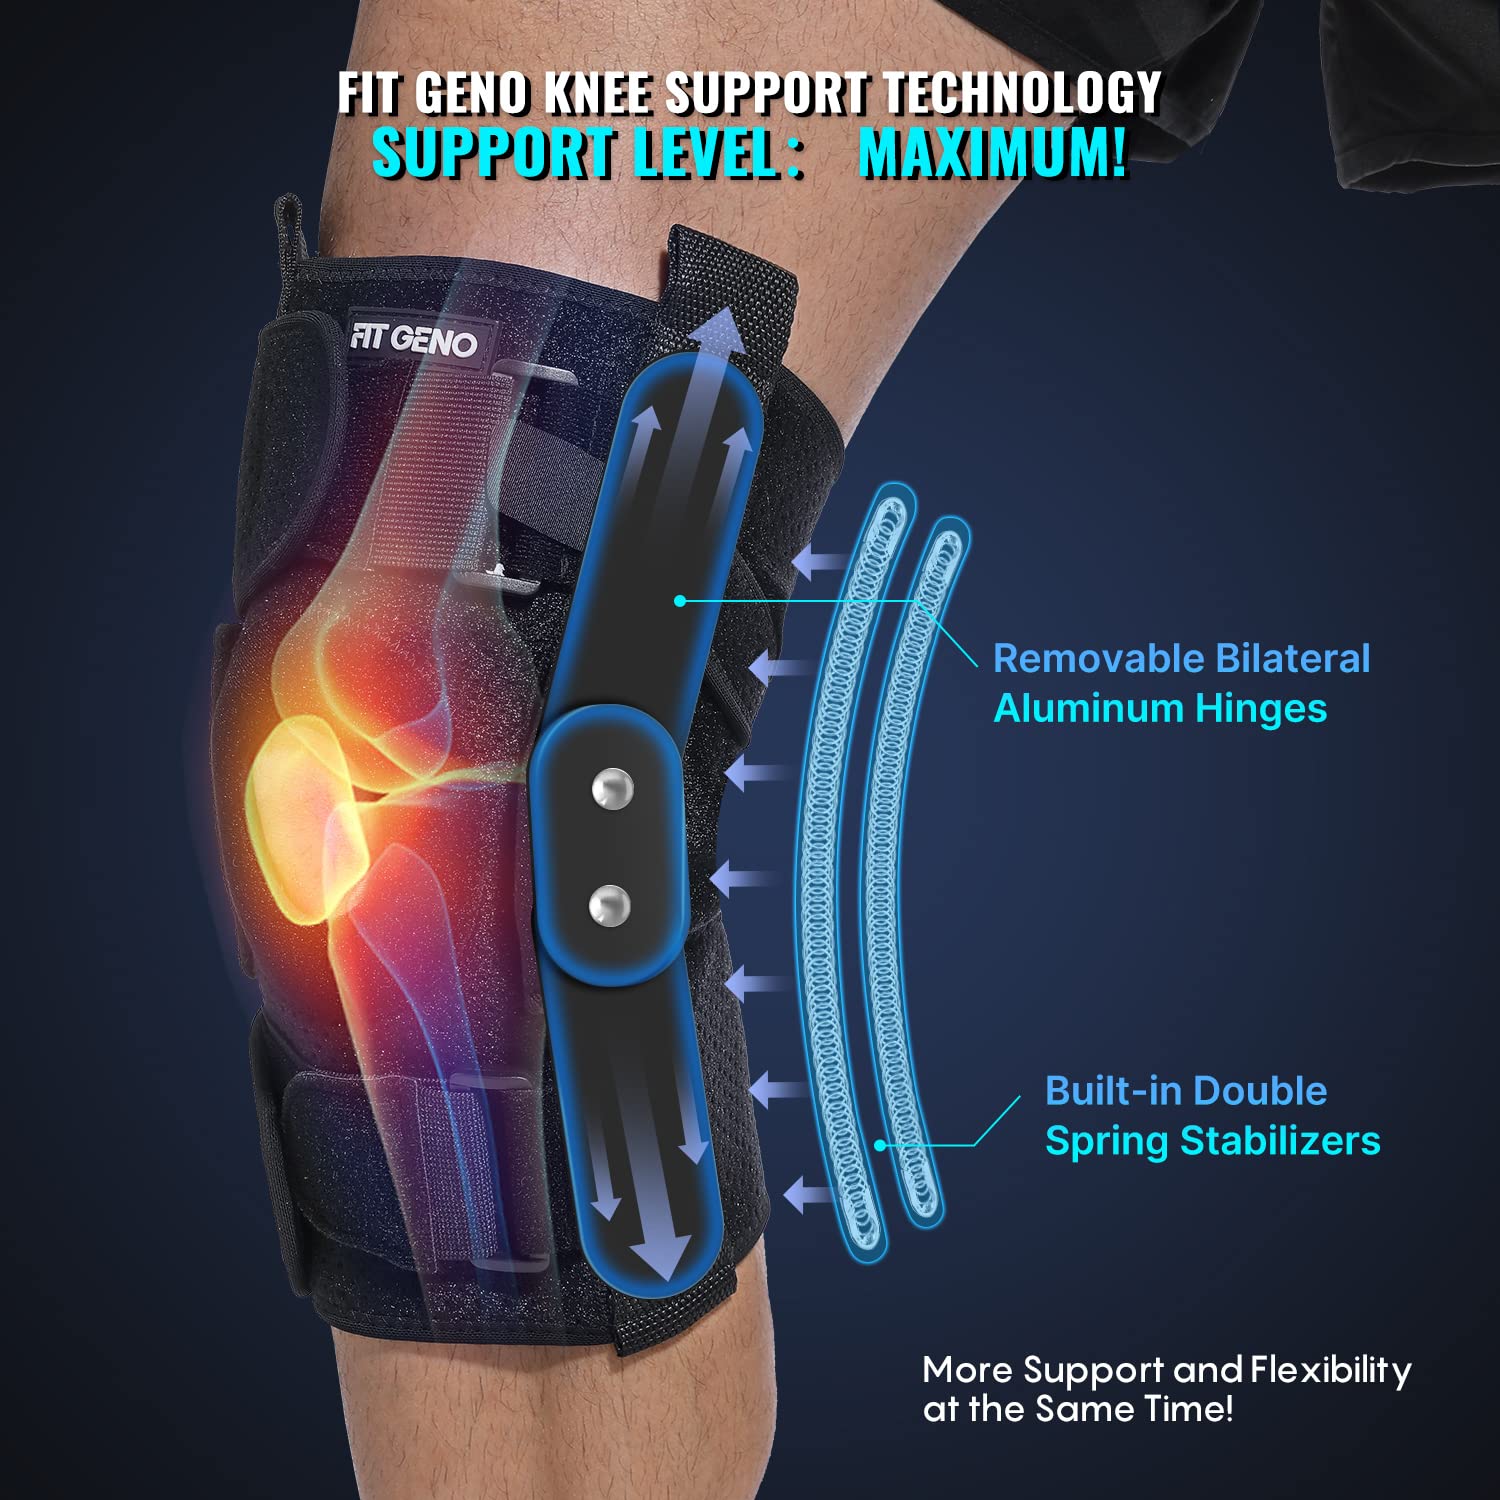 The Best Knee Brace for Meniscus Tears - Spring Loaded Technology